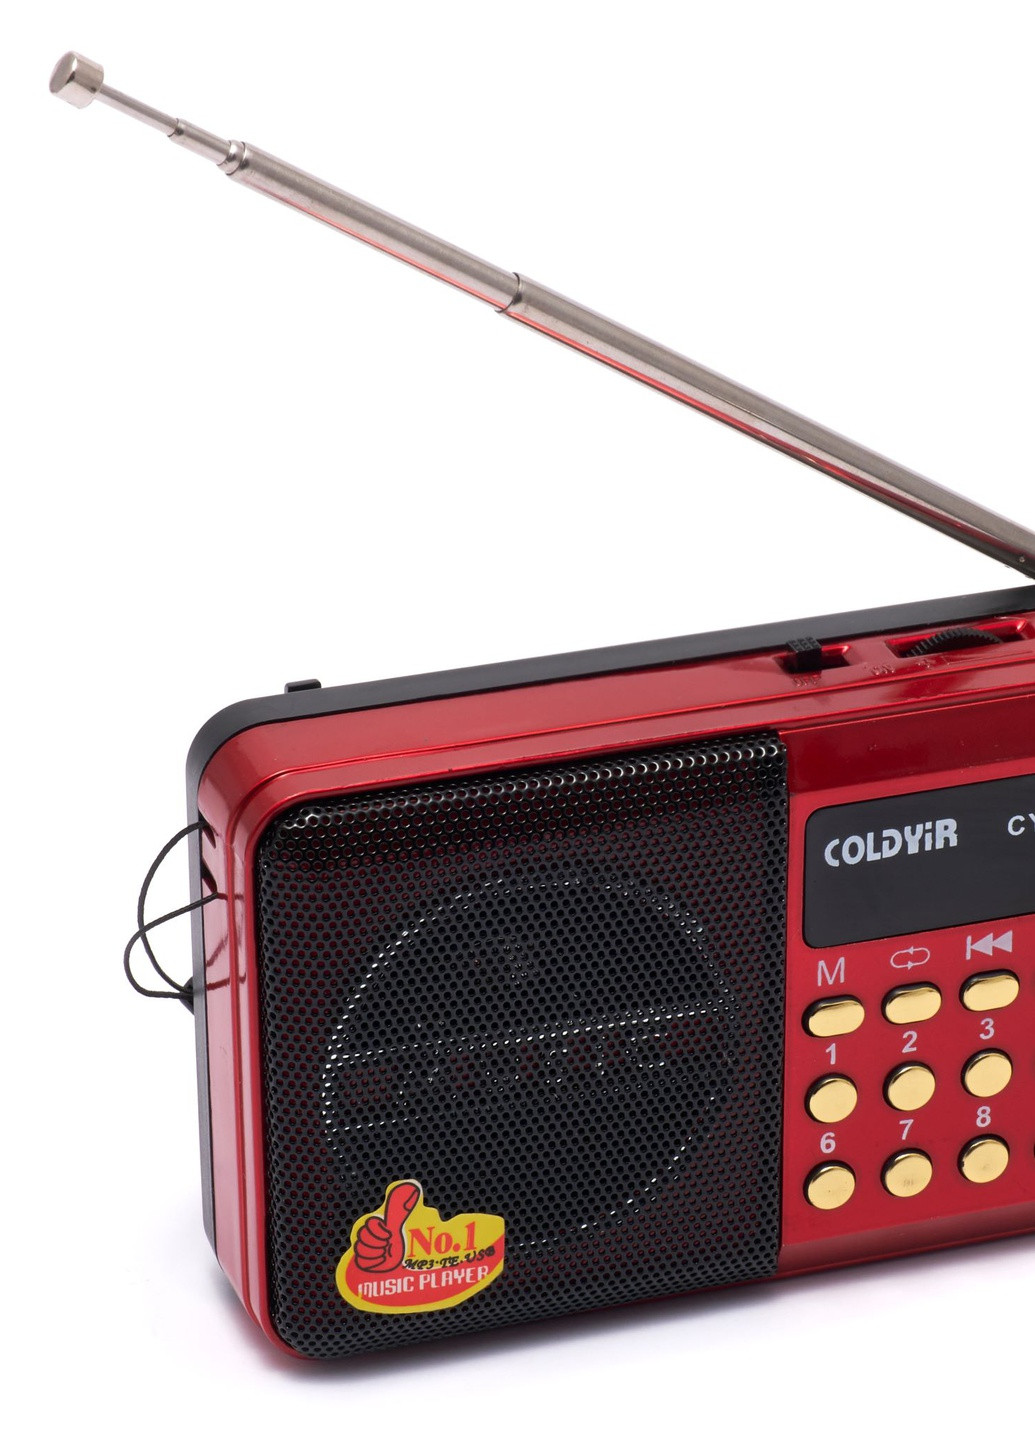 Портативне акумкляторне FM-радіо coldyir cy-011 З роз'ємом для USB та картки пам'яті червоне Led (257623839)